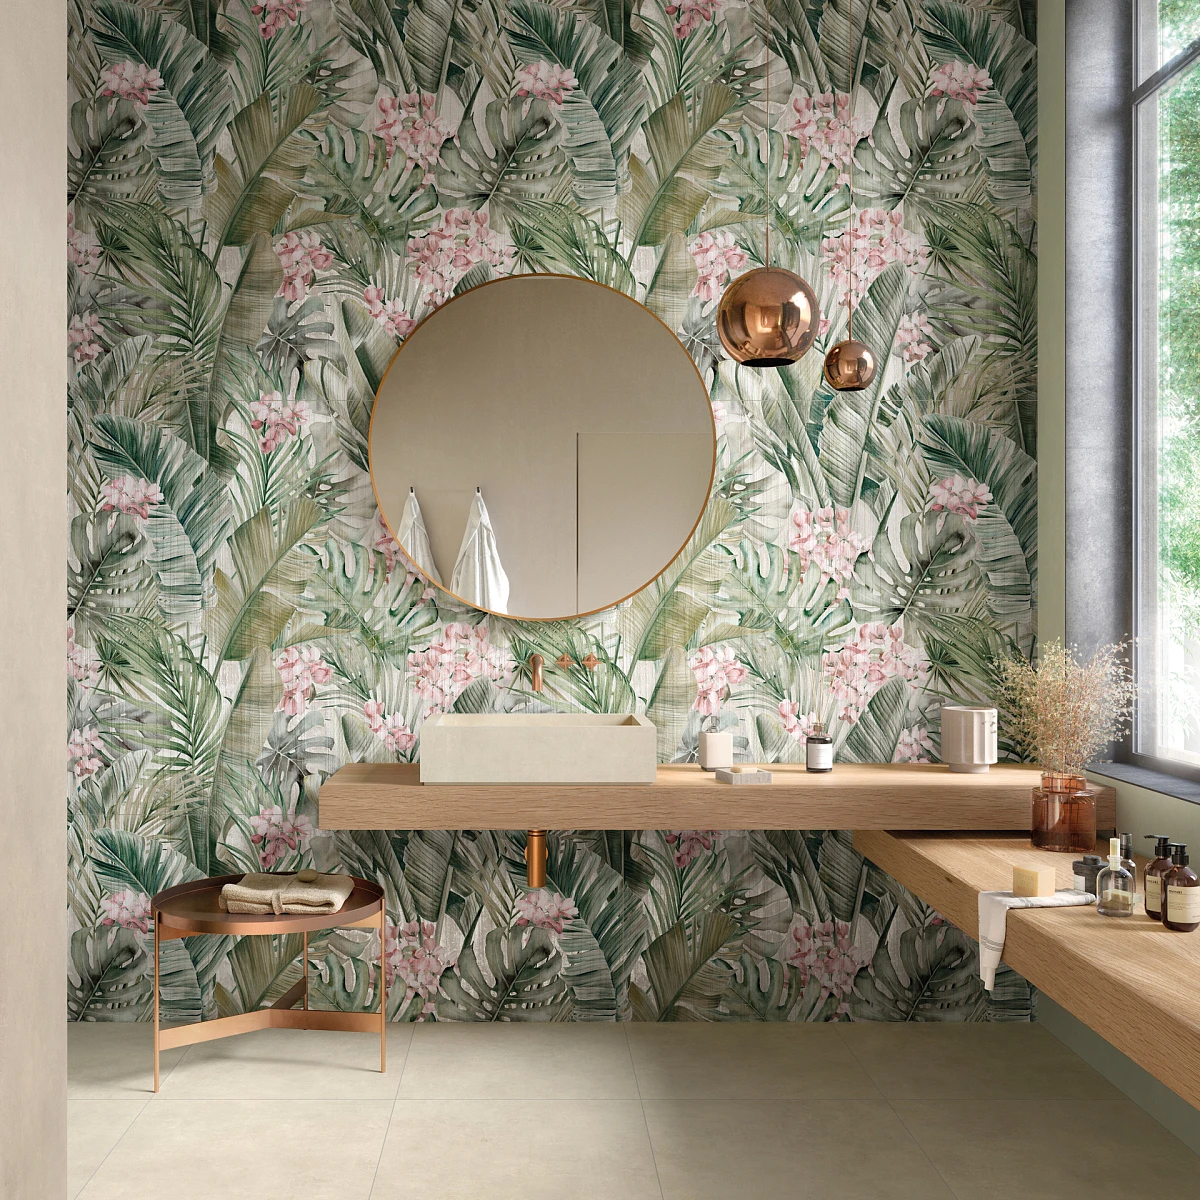 Tapeta z motywem roślinnym w delikatnym zielonym kolorze, znajdująca się za blatem łazienkowym oraz okrągłym lustrem. 